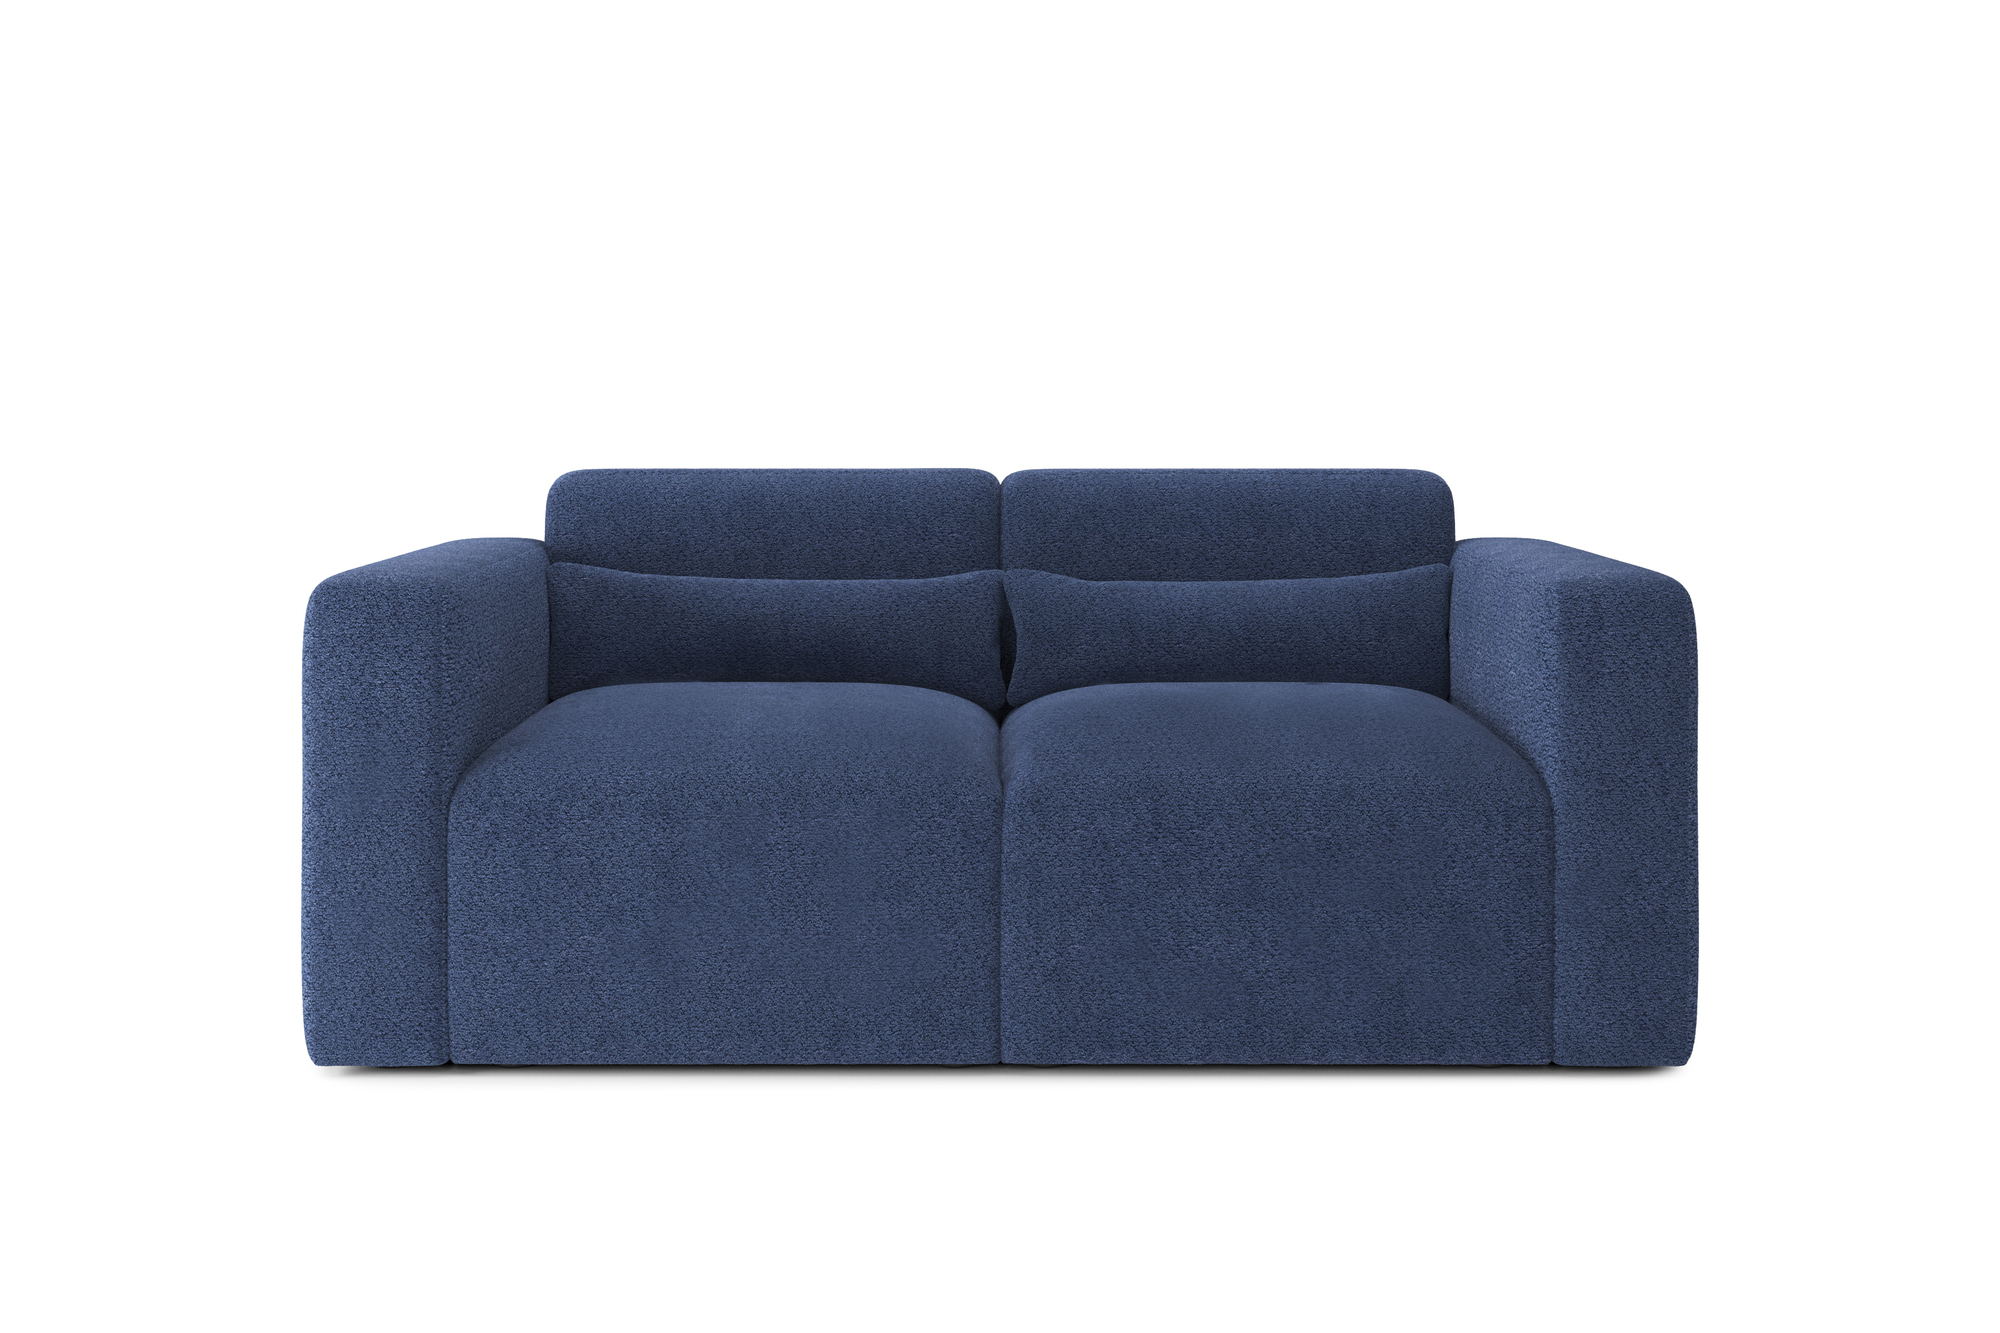 Canapé droit 2 places Bleu Tissu Design Confort